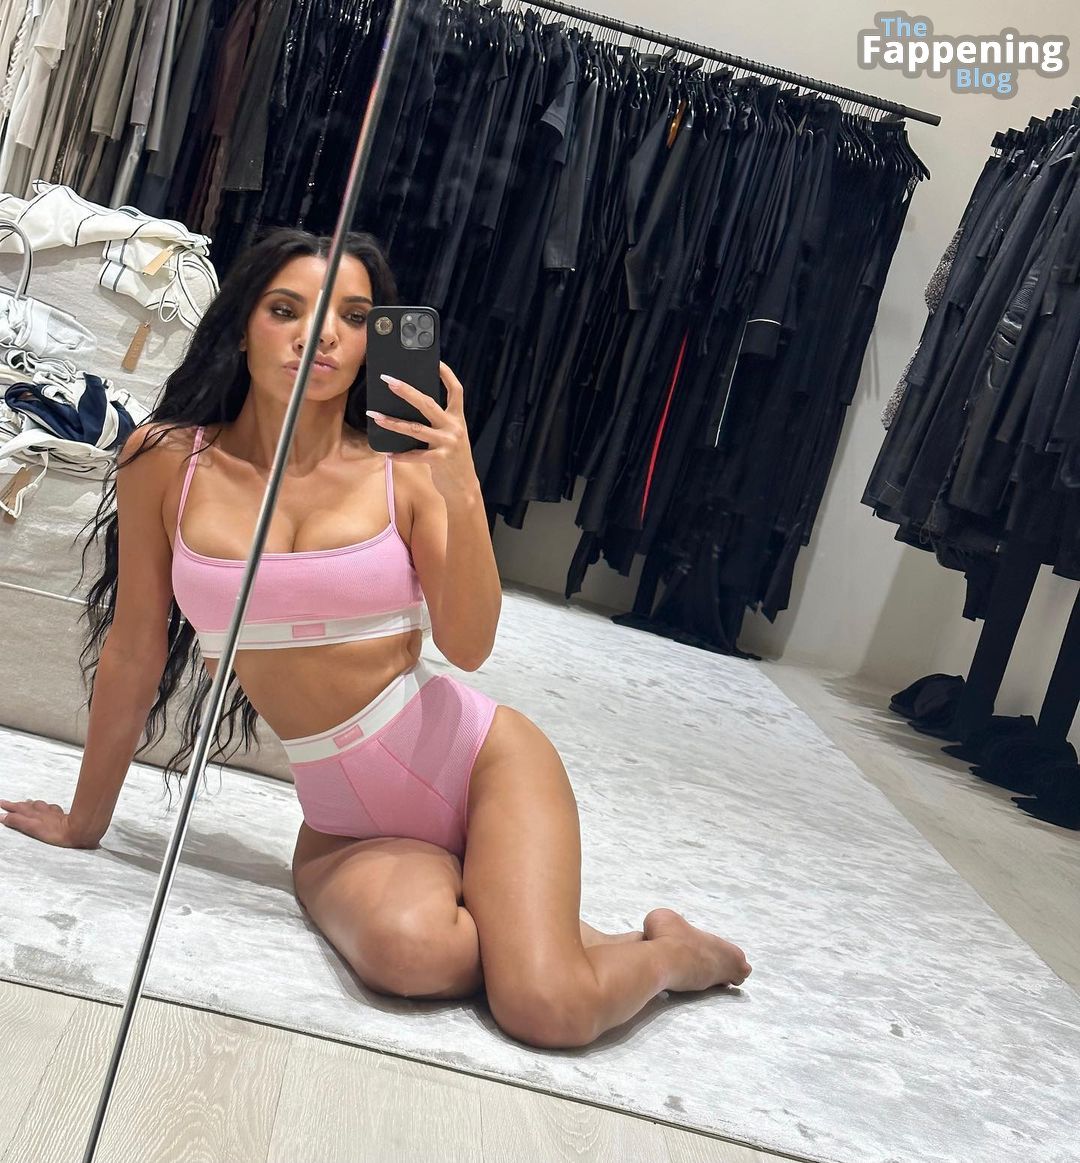 Kim-Kardashian-Sexy-4-The-Fappening-Blog-5.jpg